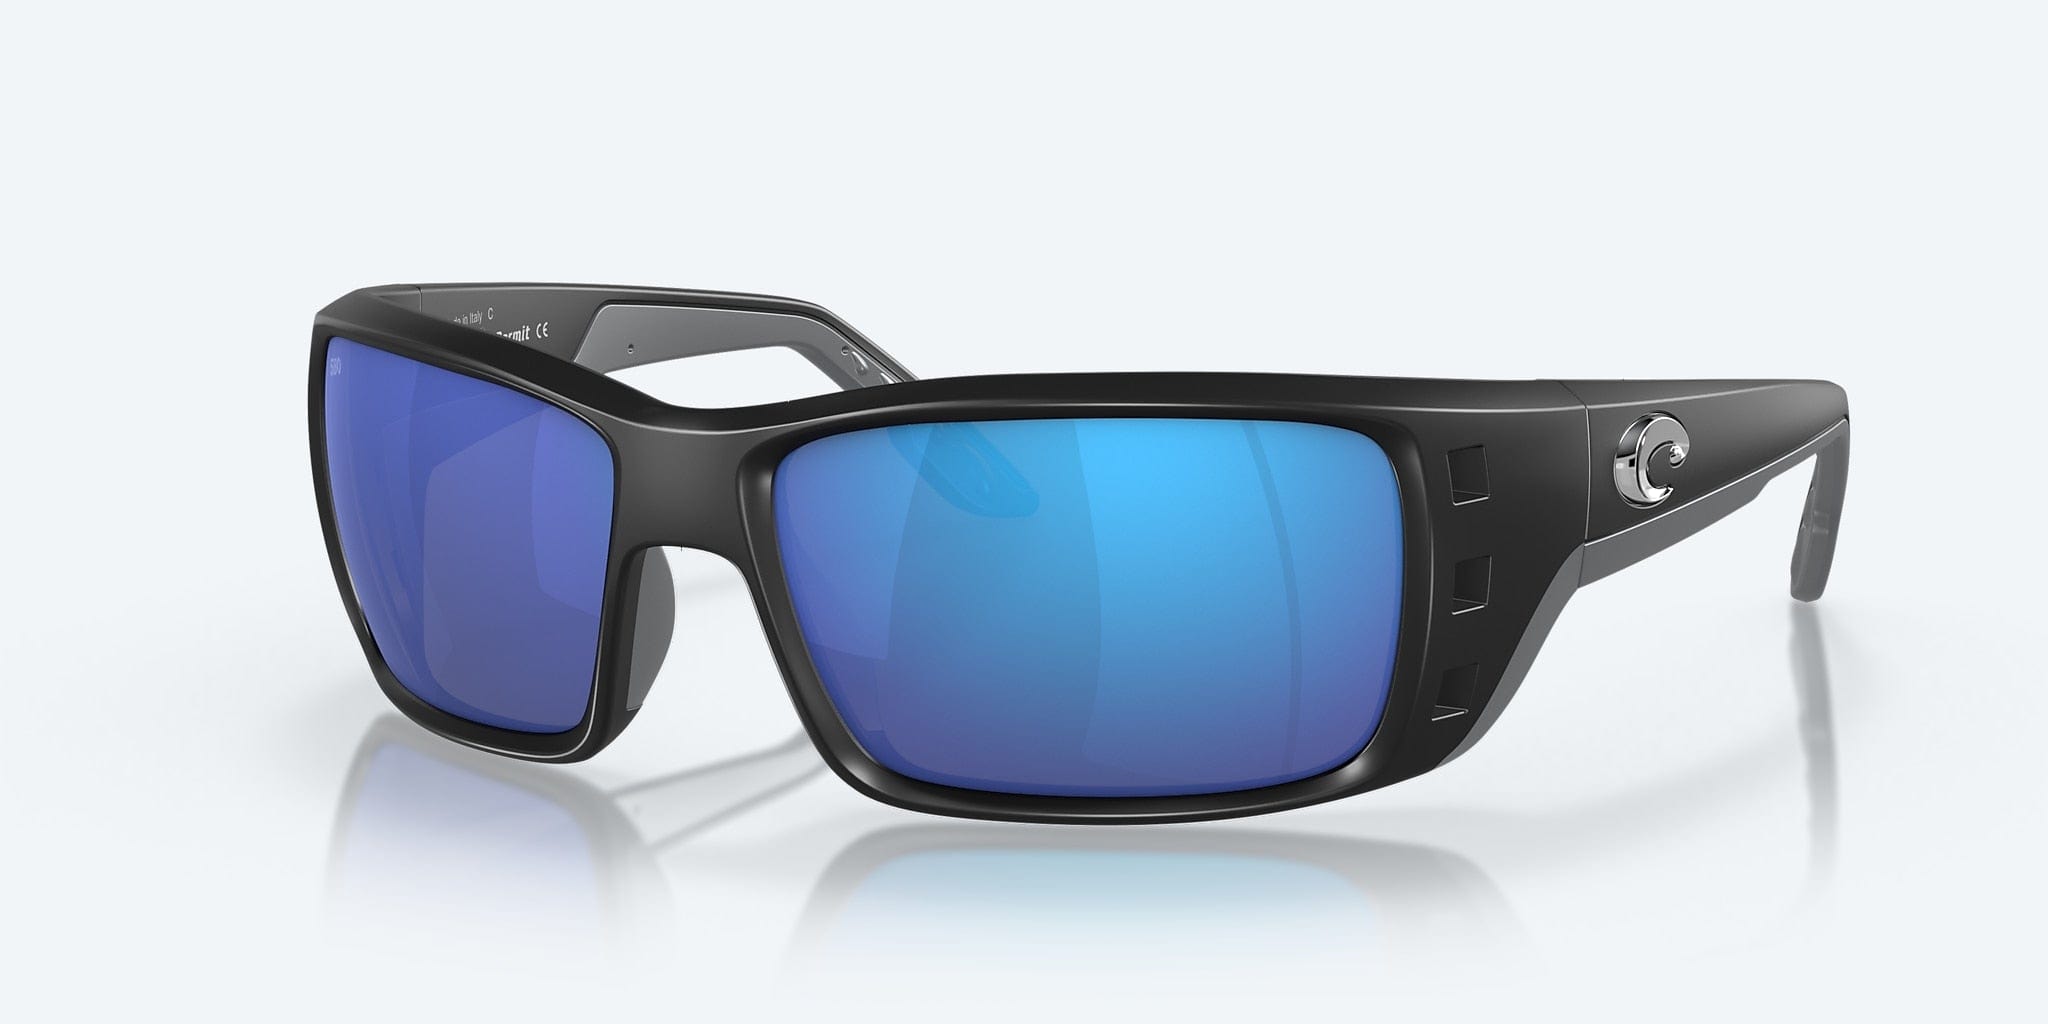 Costa Del Mar Blackfin Polarized Sunglasses - Men's  Polarized sunglasses  men, Fishing sunglasses, Polarized